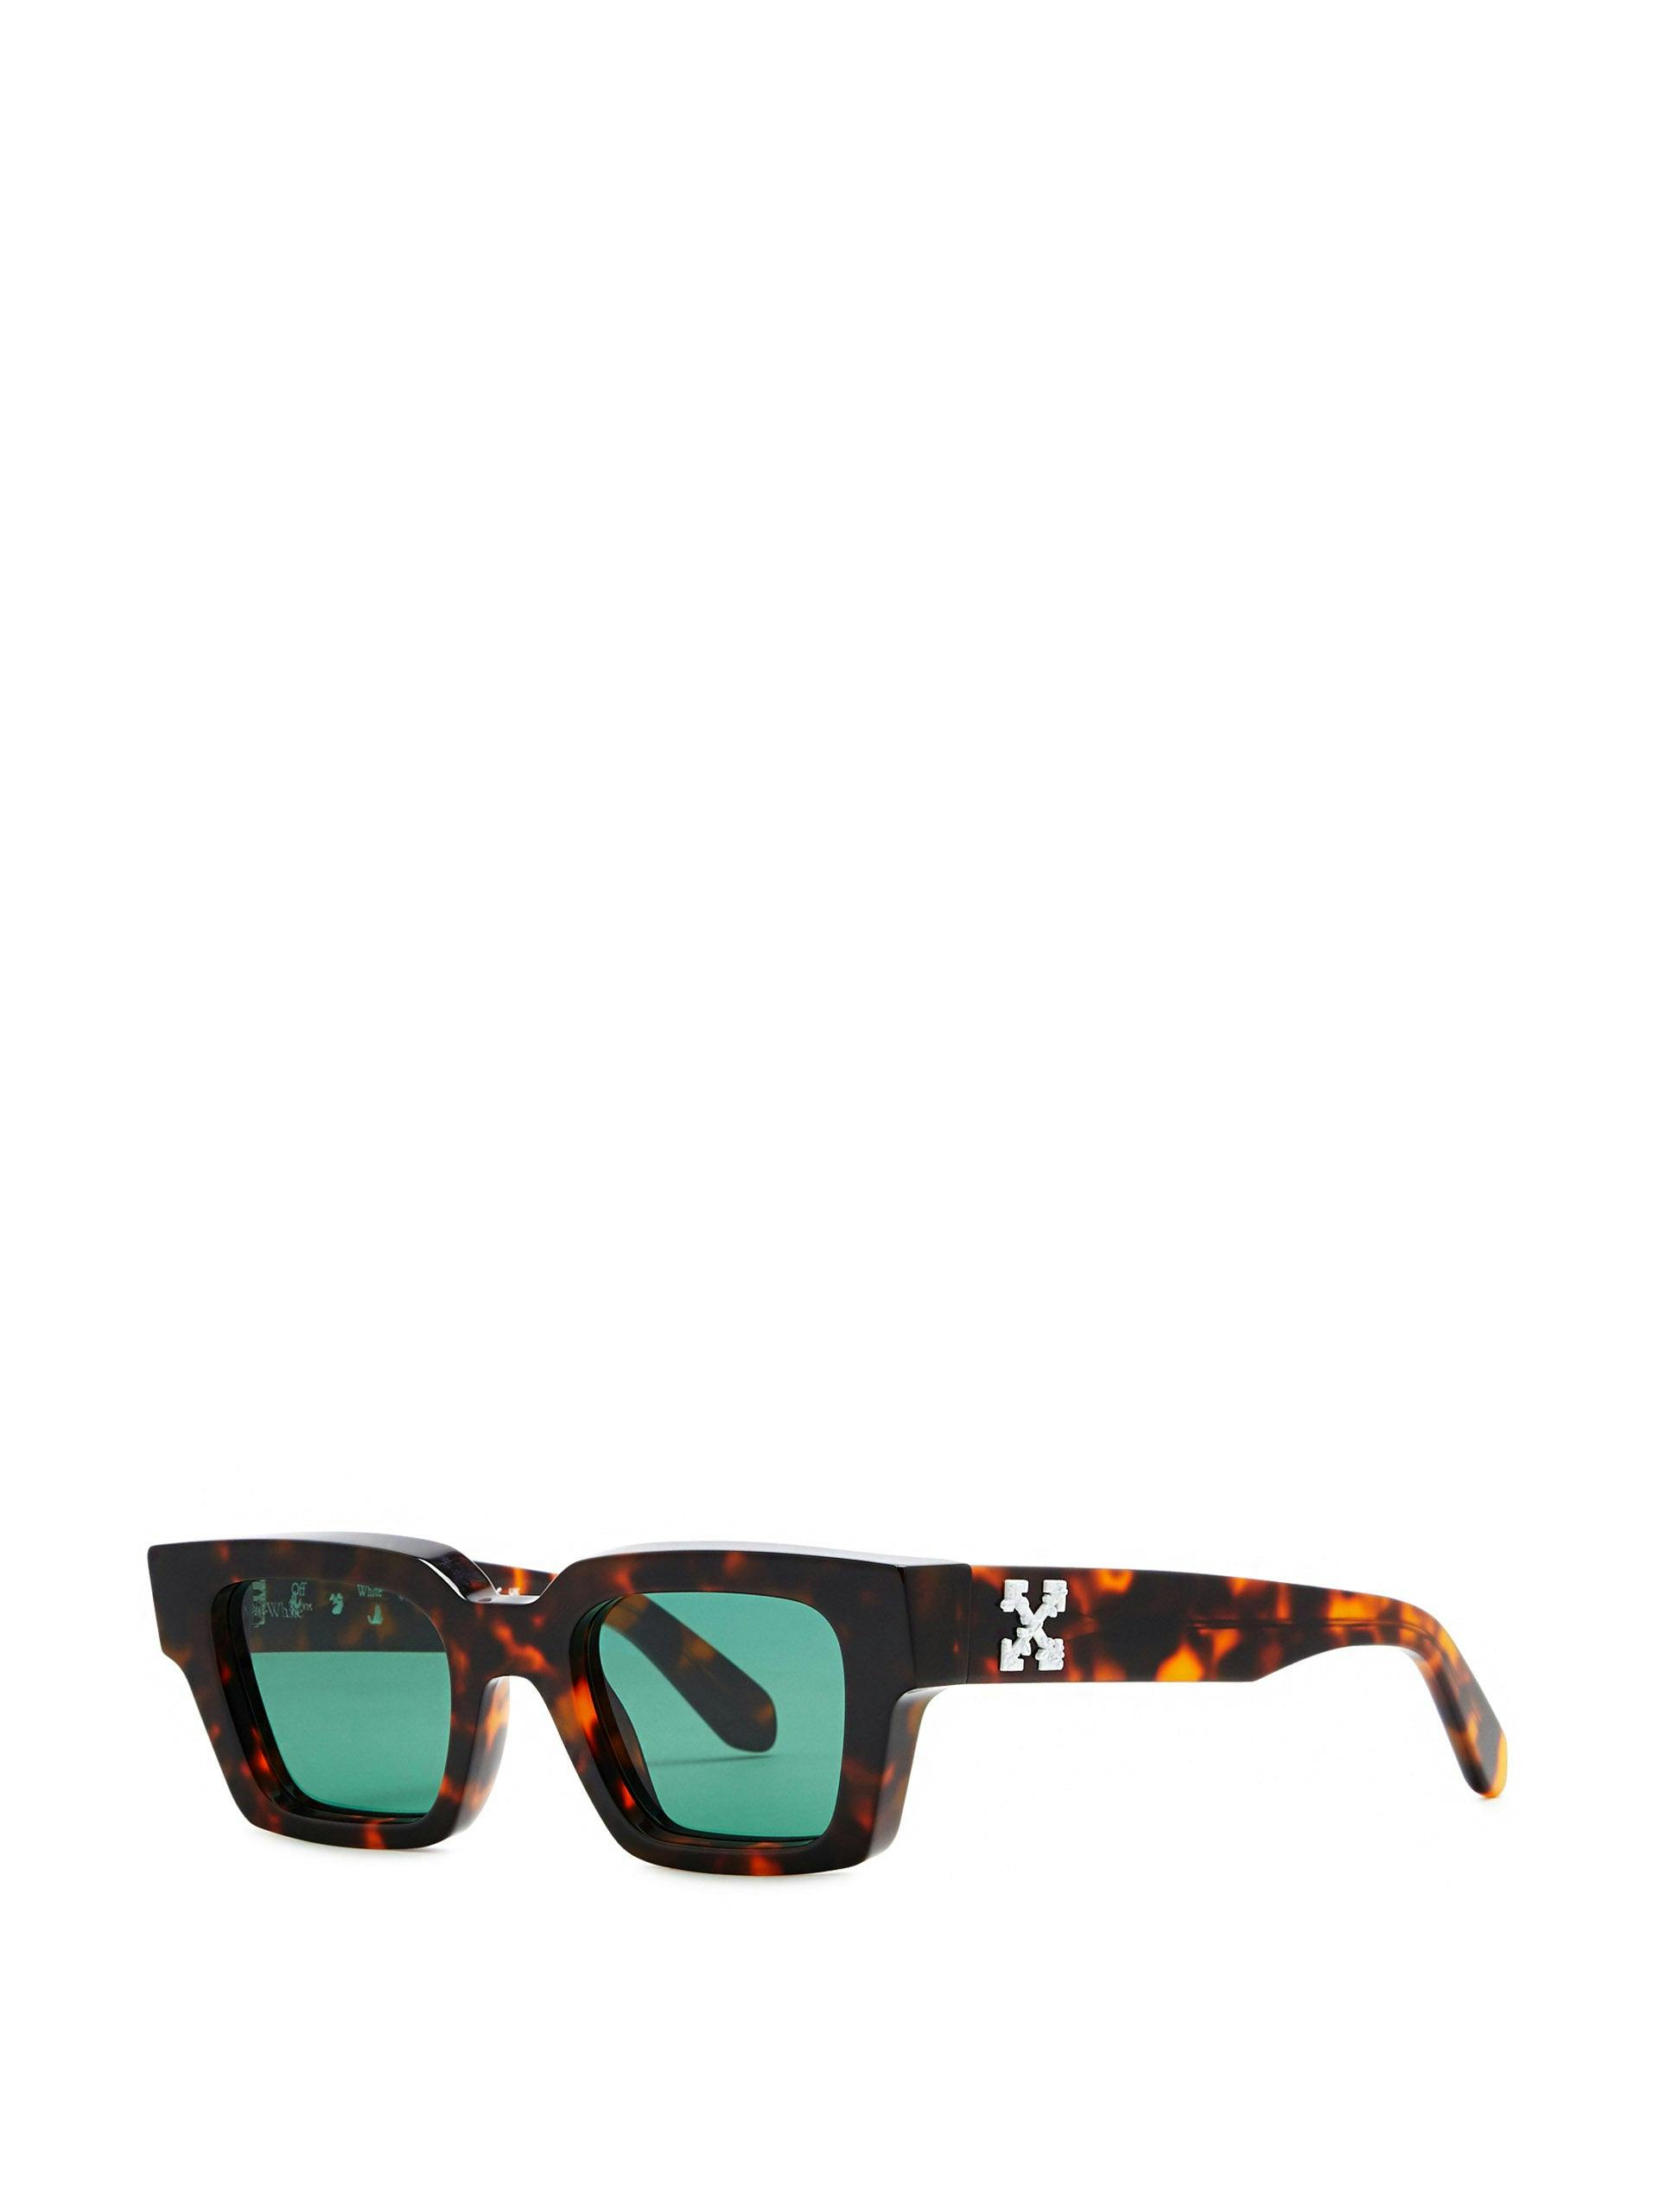 Virgil rectangle-frame sunglasses